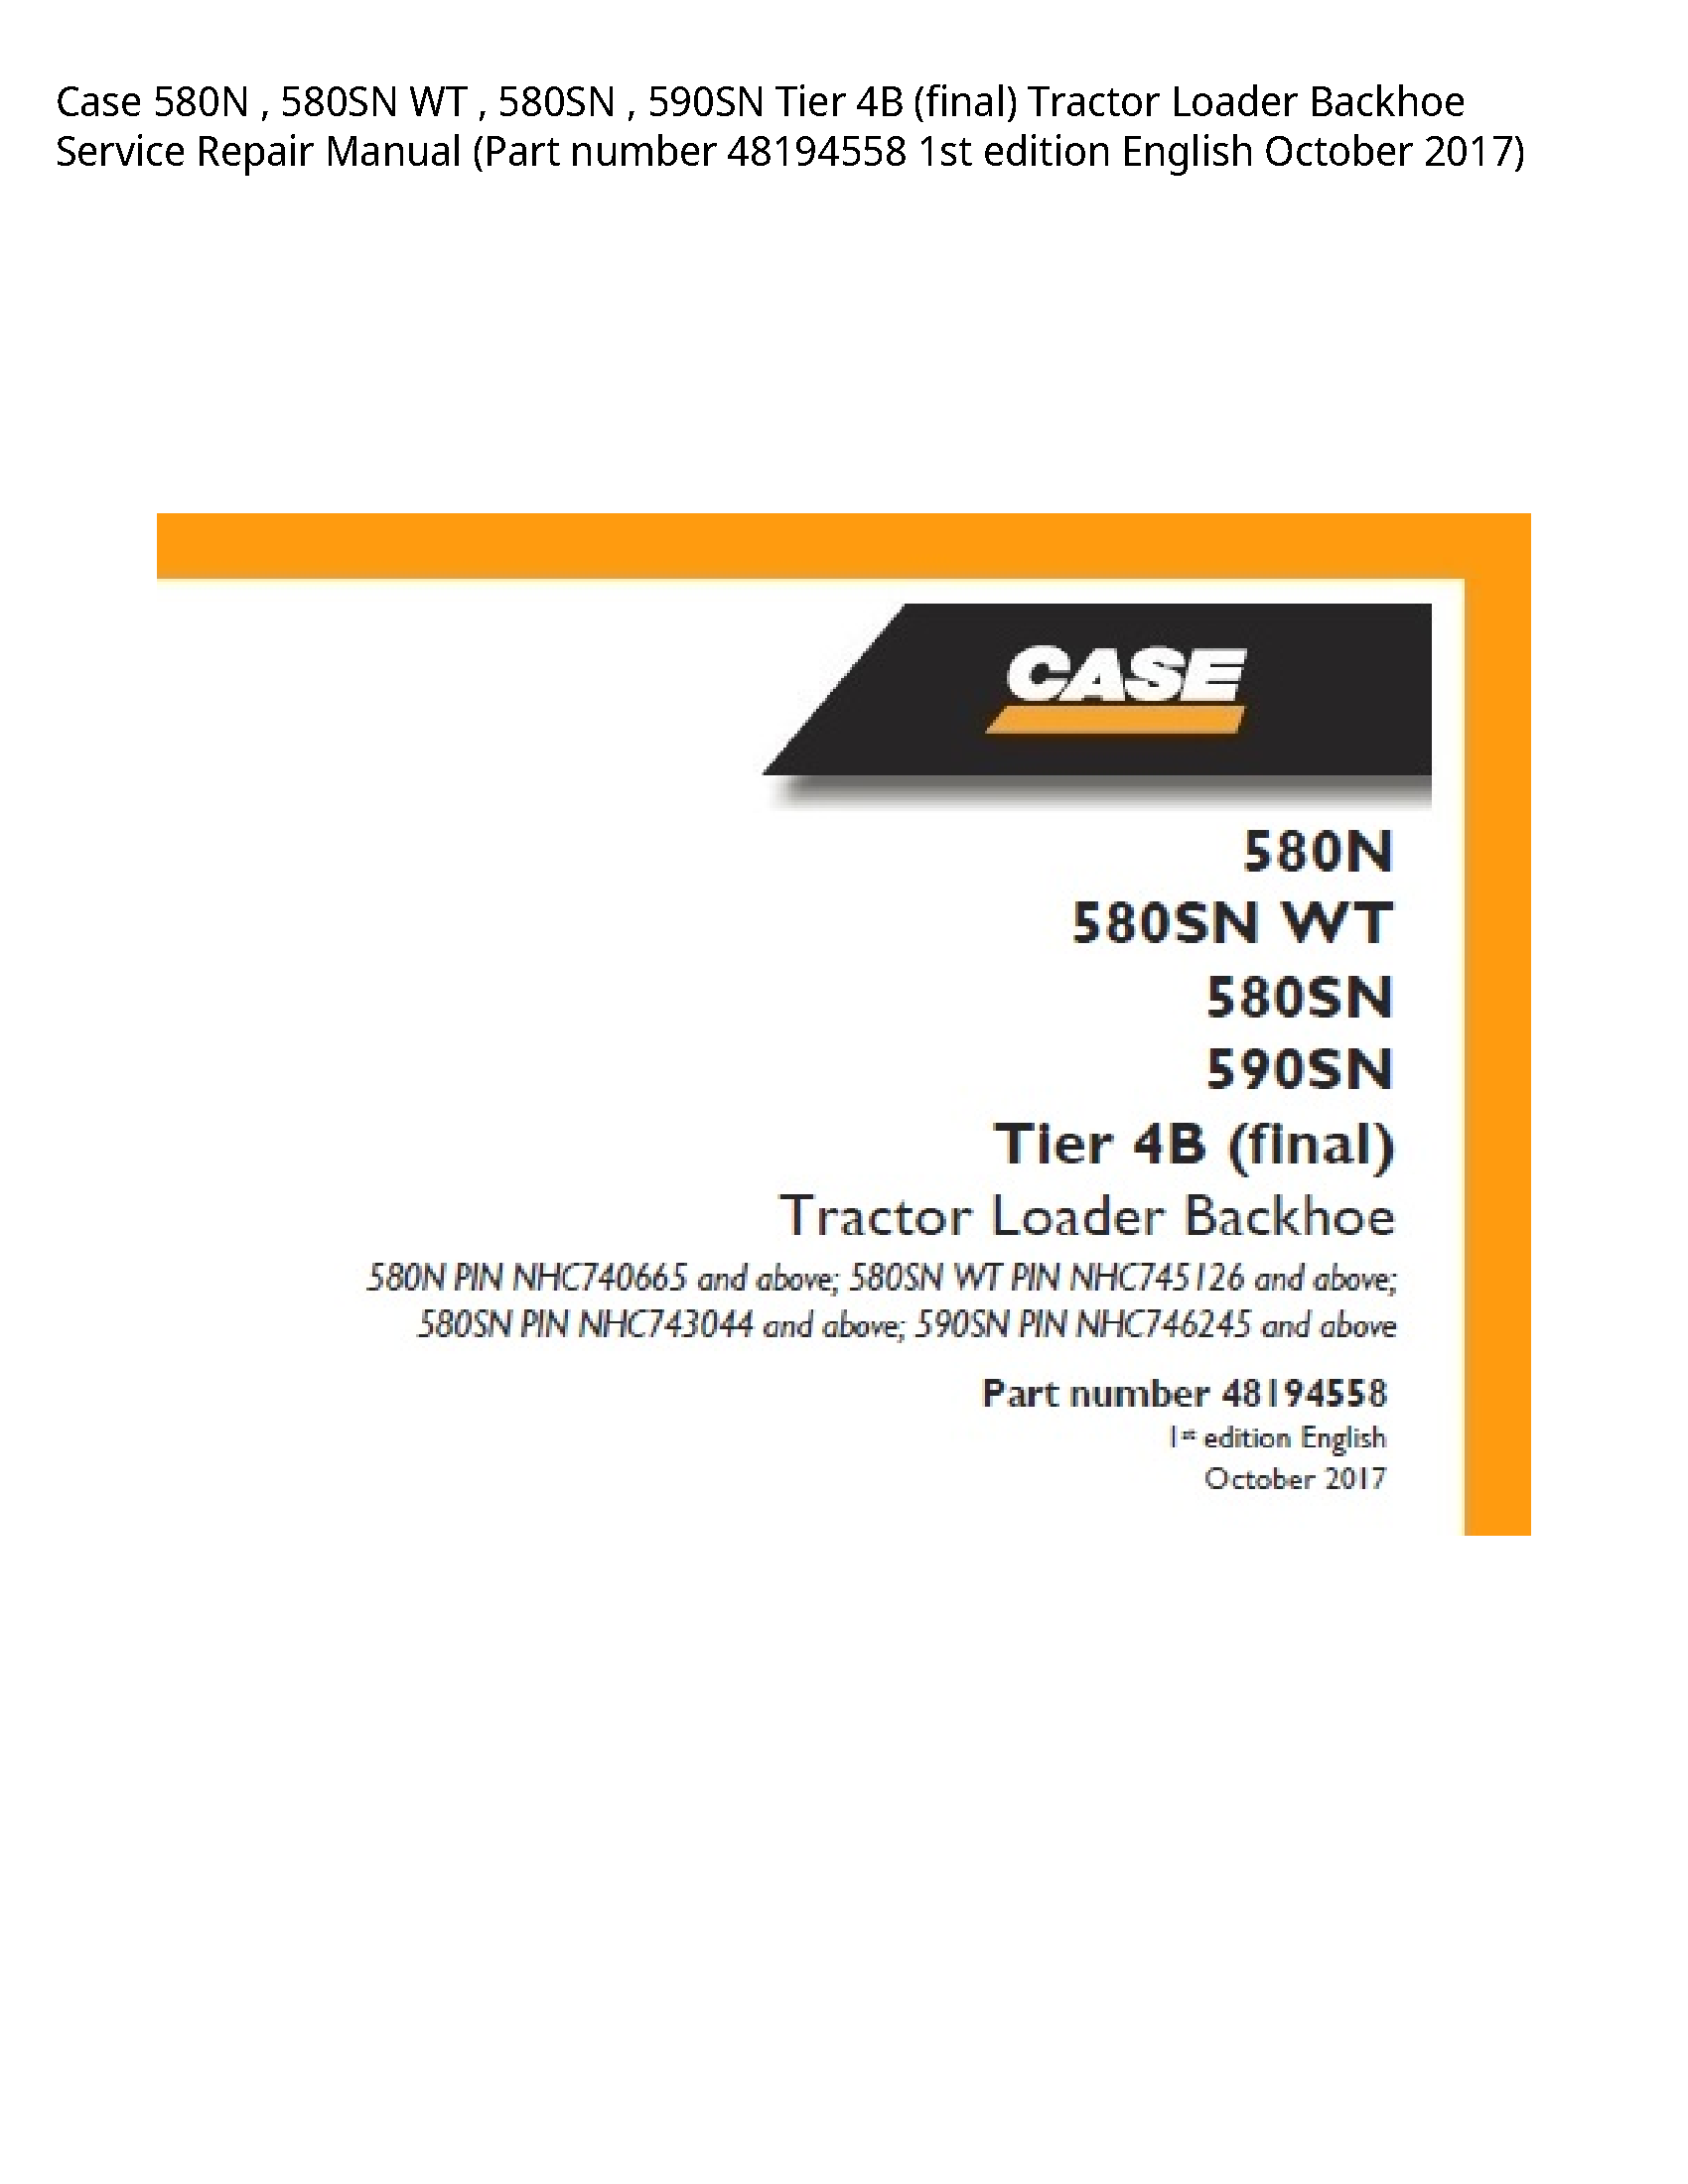 Case/Case IH 580N WT Tier (final) Tractor Loader Backhoe manual